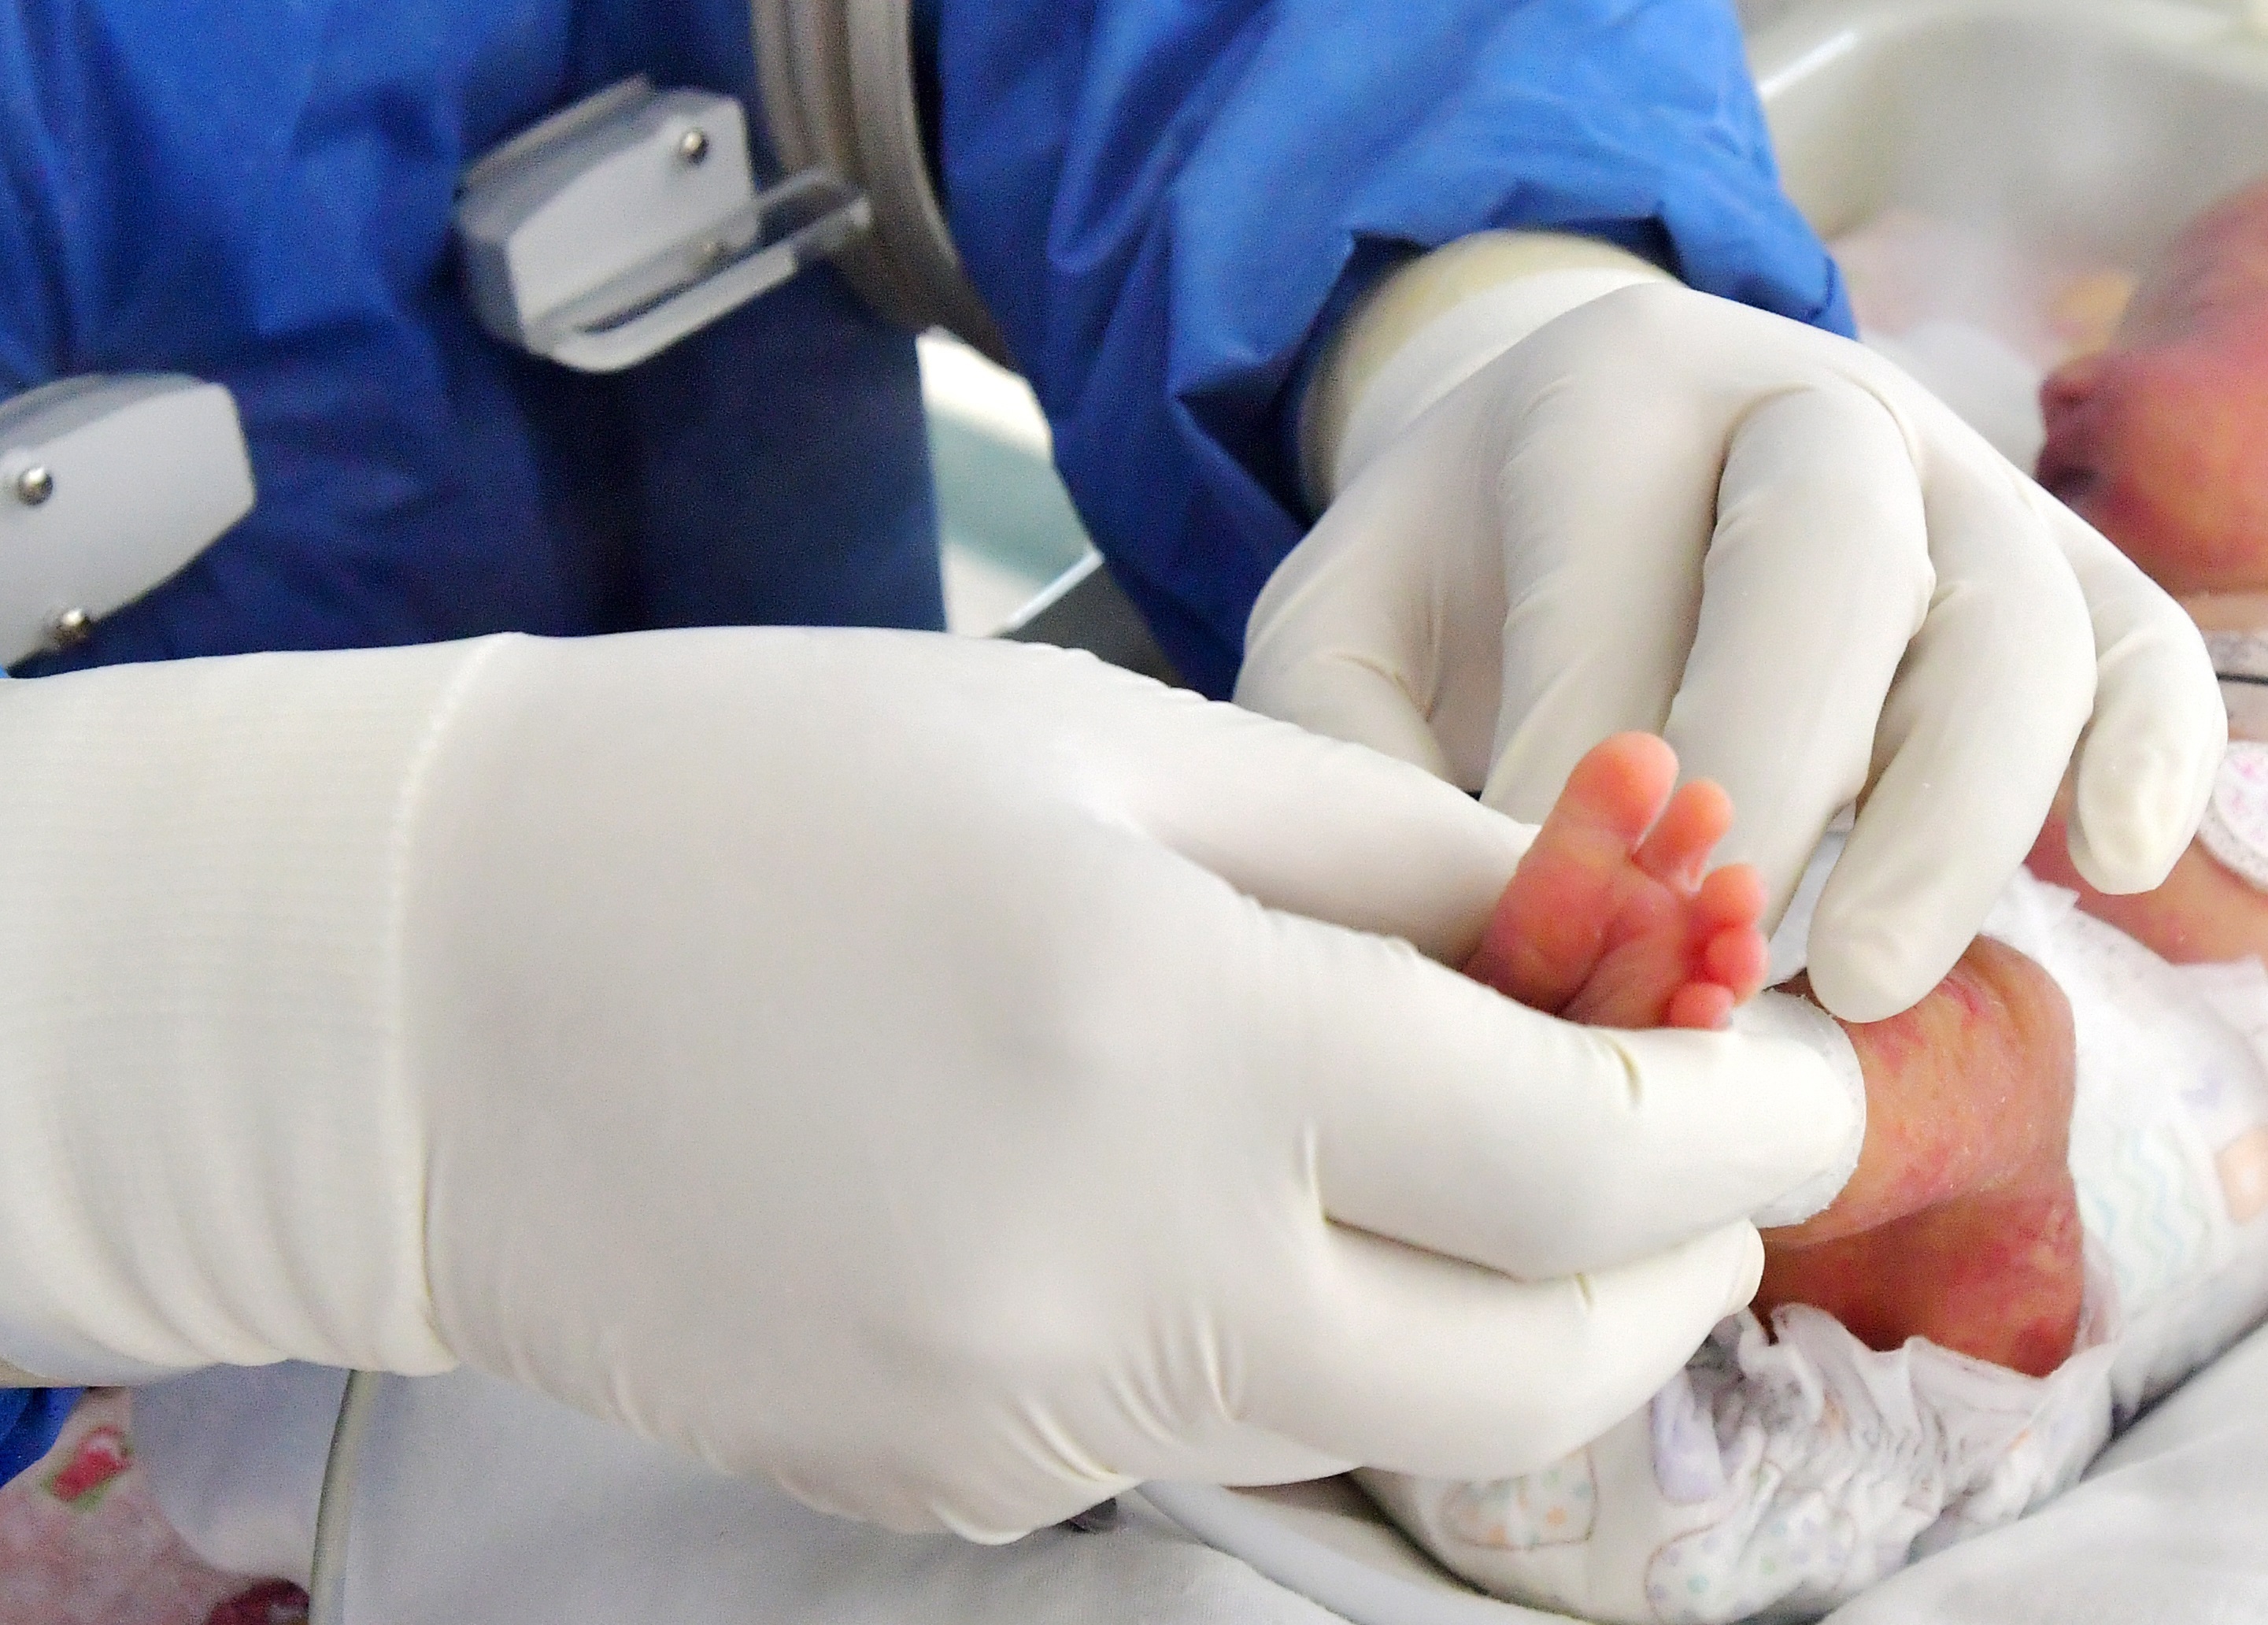 “Más de 40 enfermedades congénitas″: instan a ampliar la pesquisa neonatal